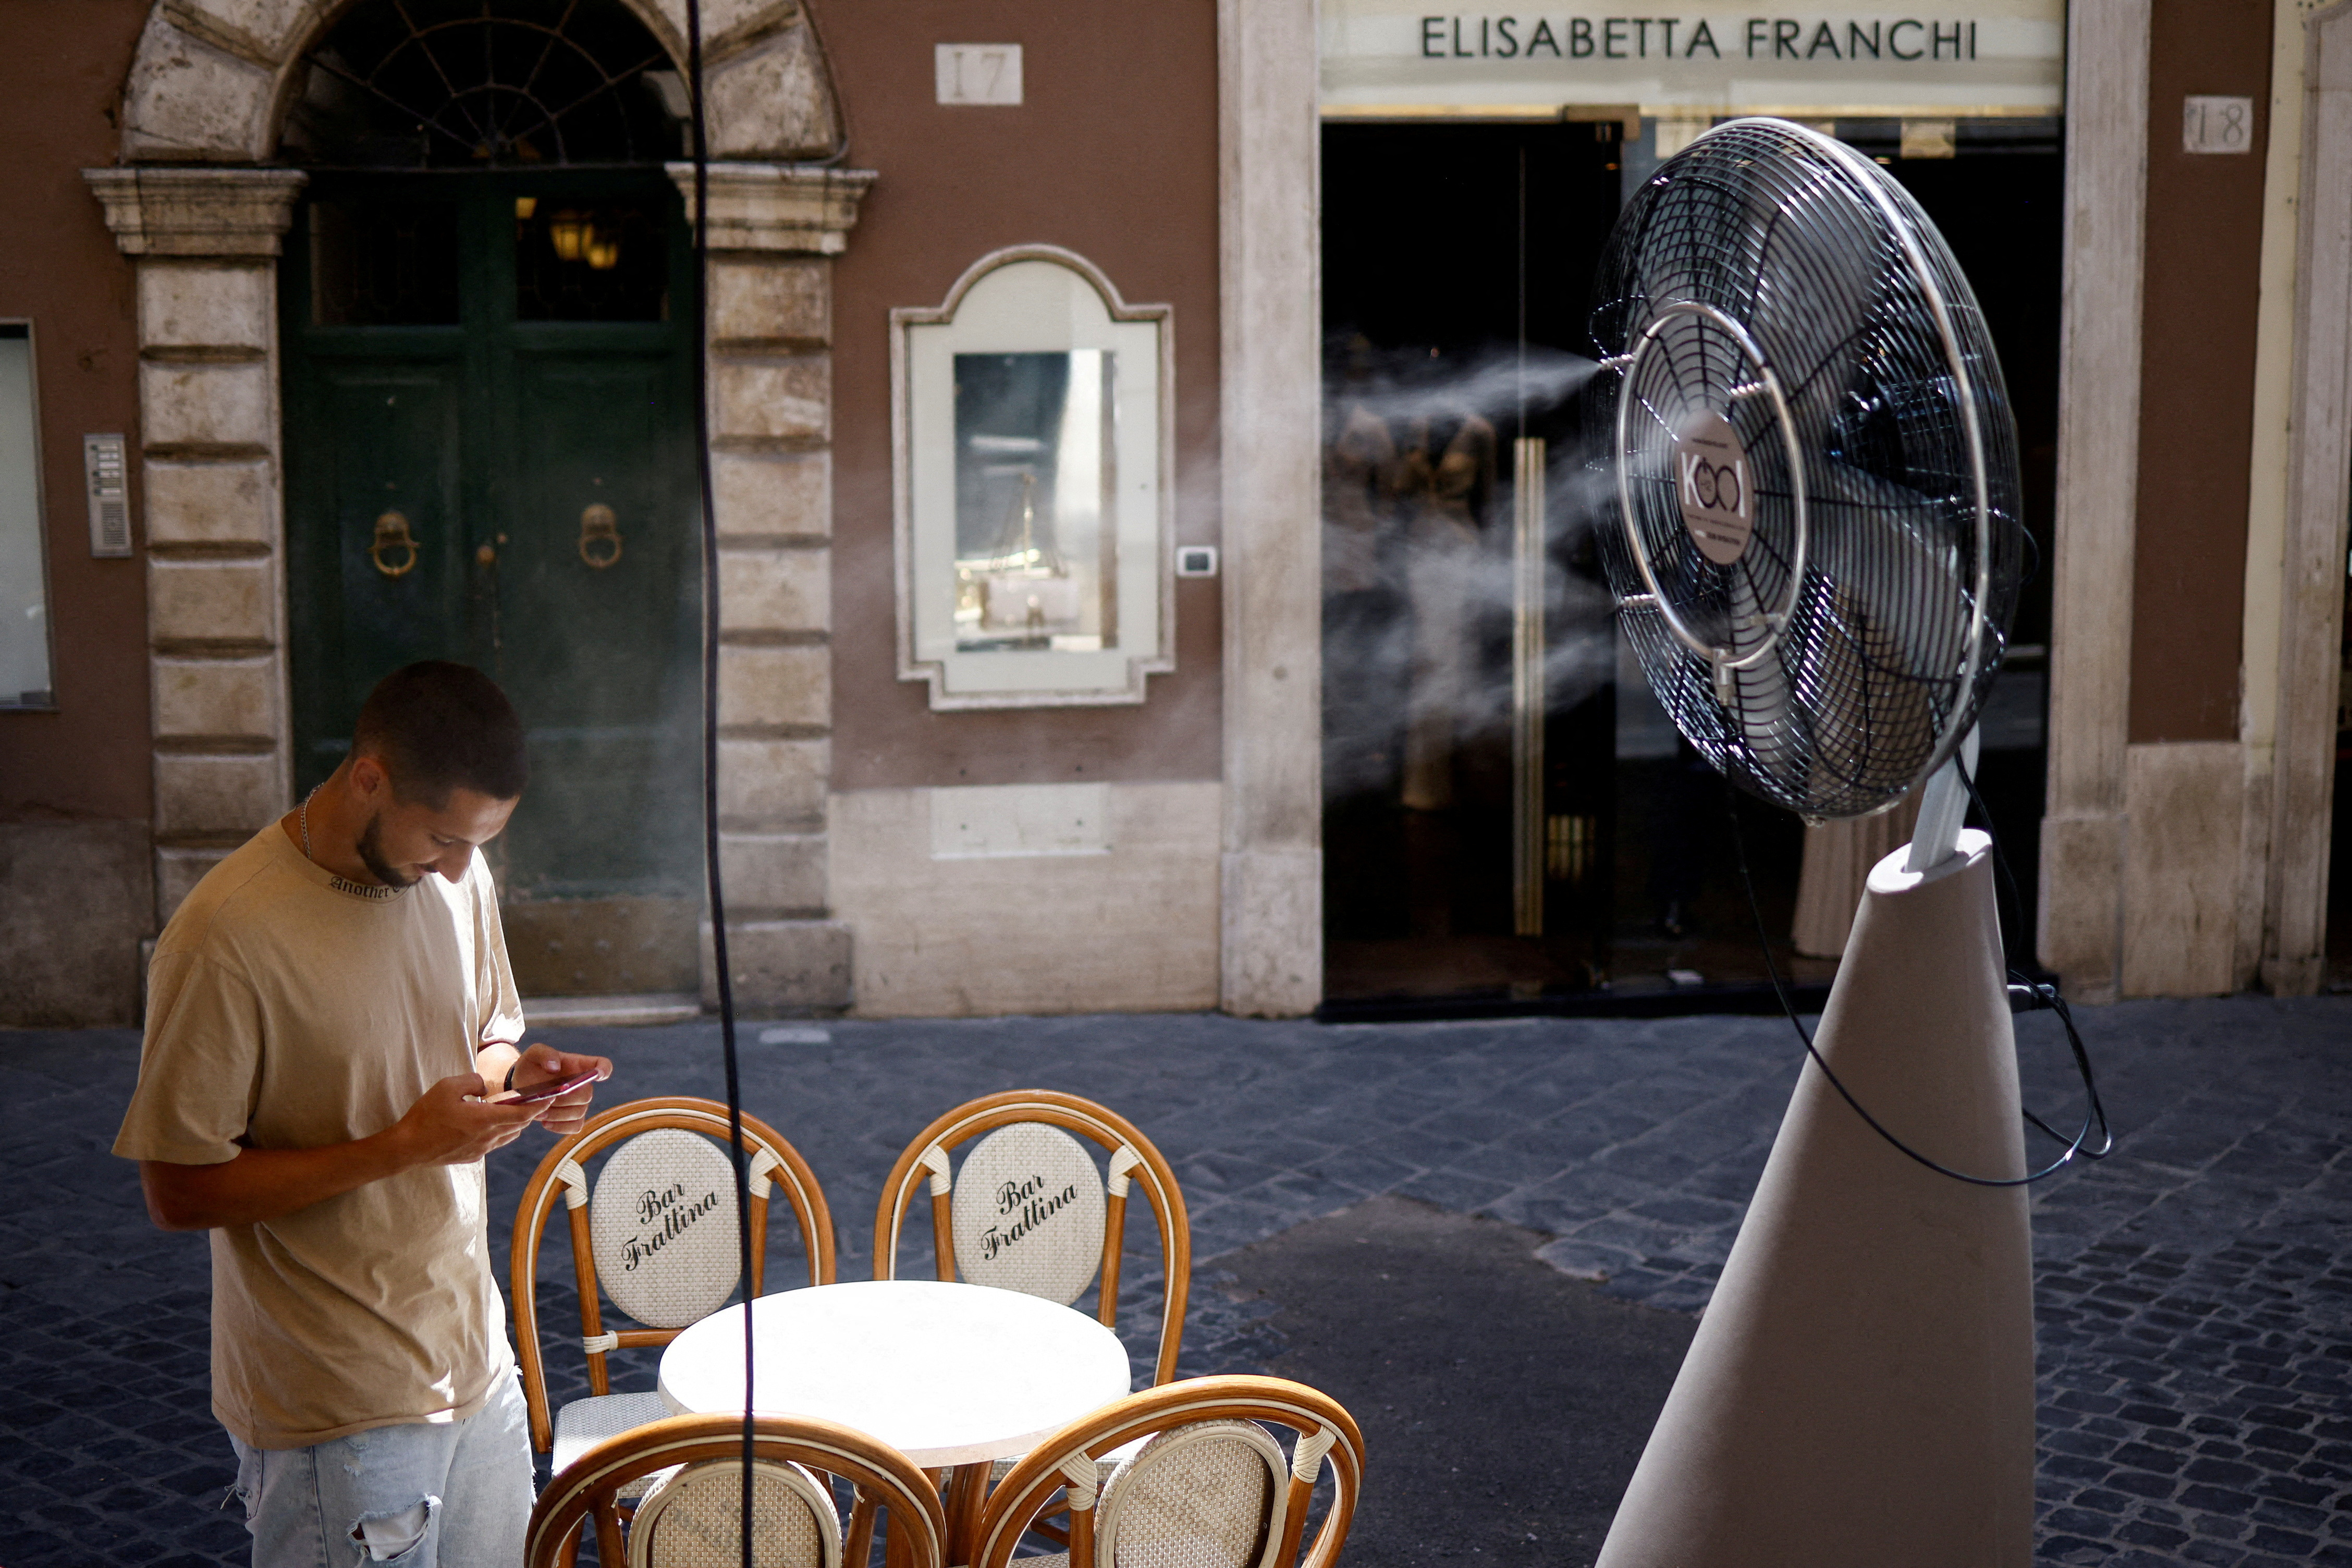 Heatwave across Italy